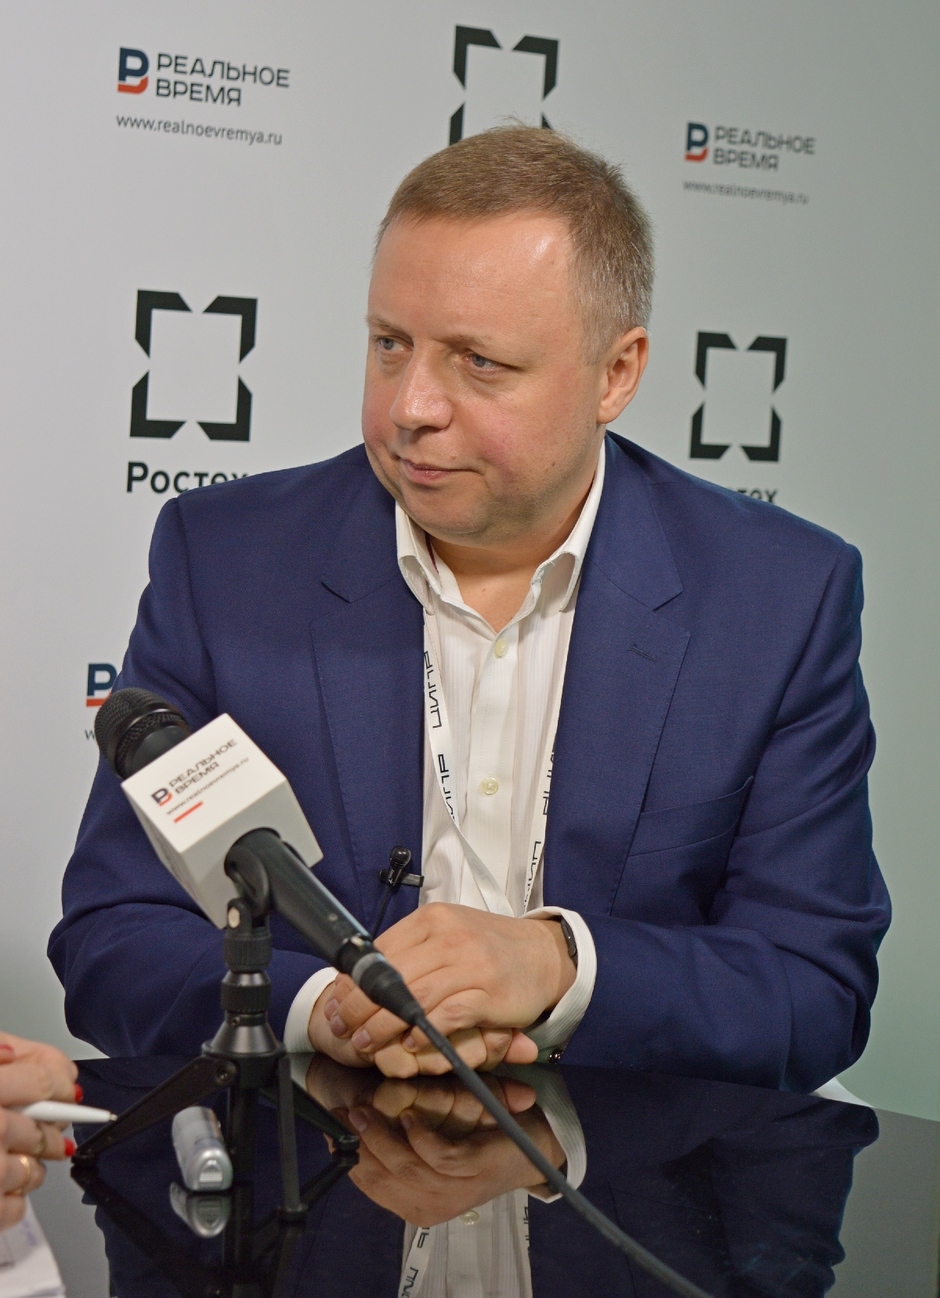 Андрей Филатов, генеральный директор IBM в России и СНГ